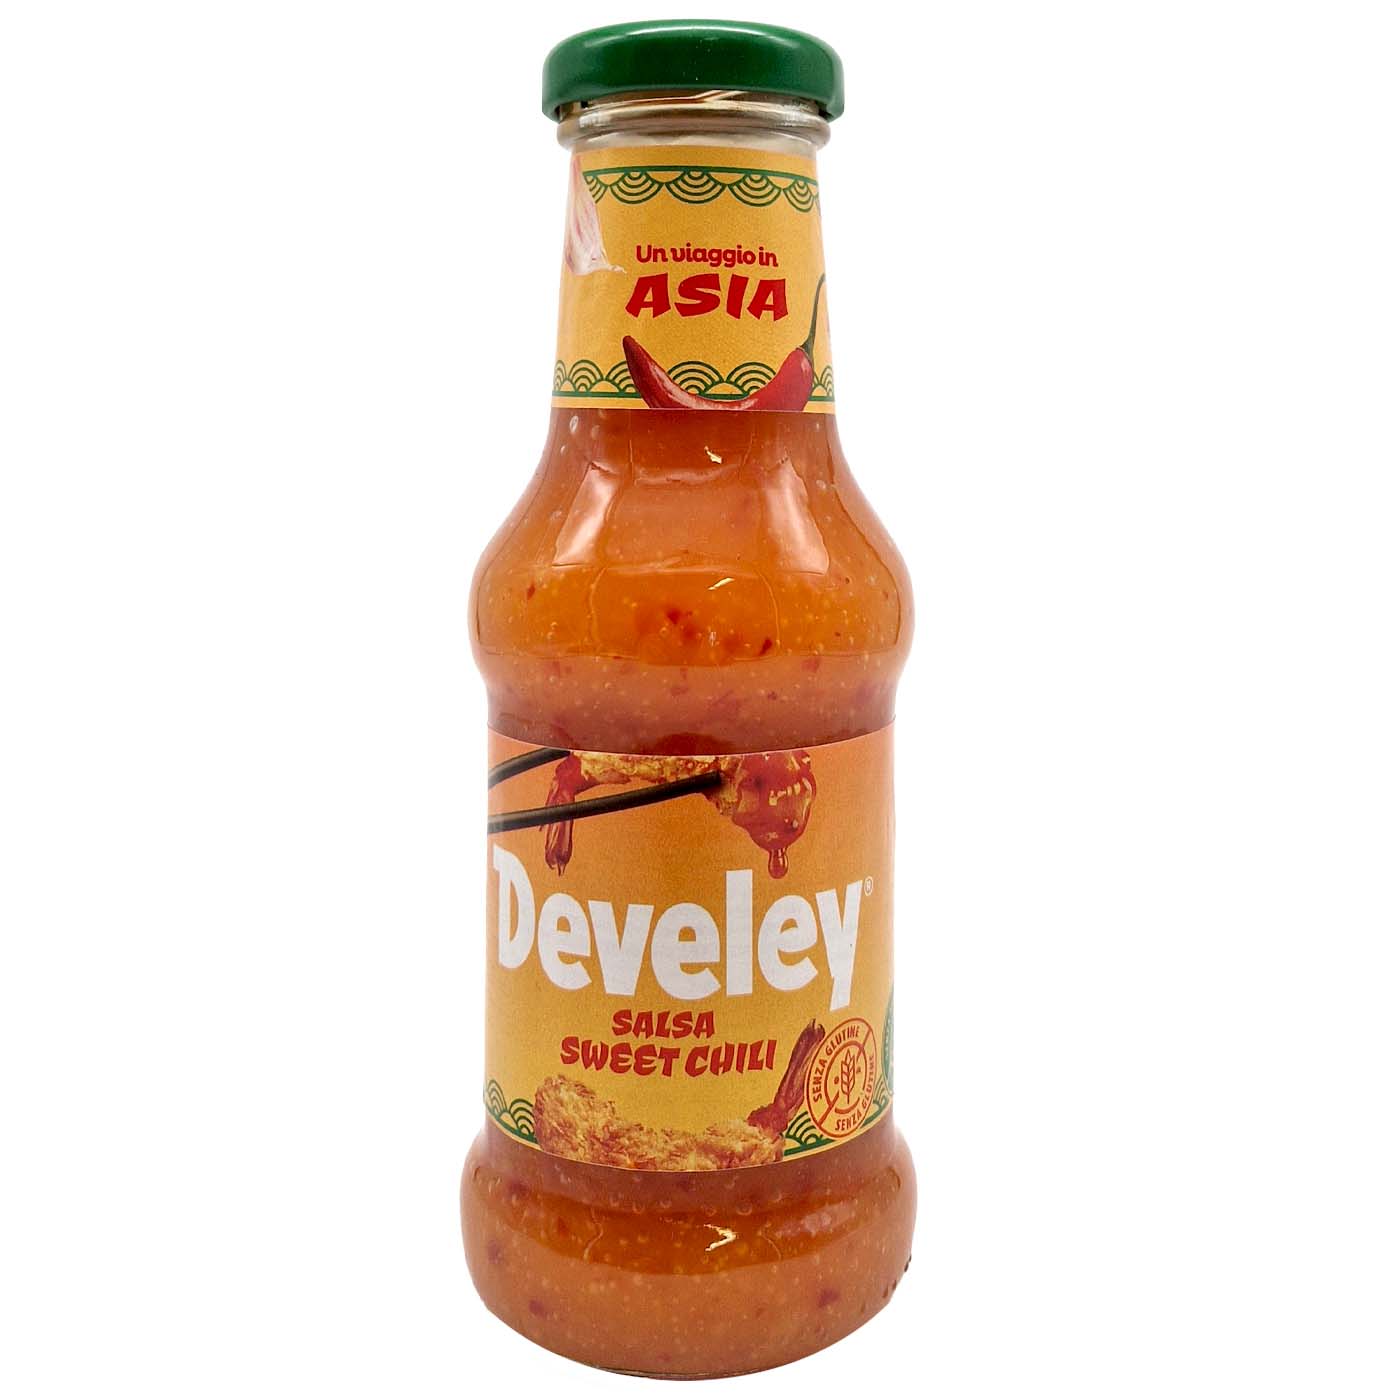 DEVELEY Salsa Sweet Chili - Sweet - Chili - Sauce - 0,250l - italienisch - einkaufen.de